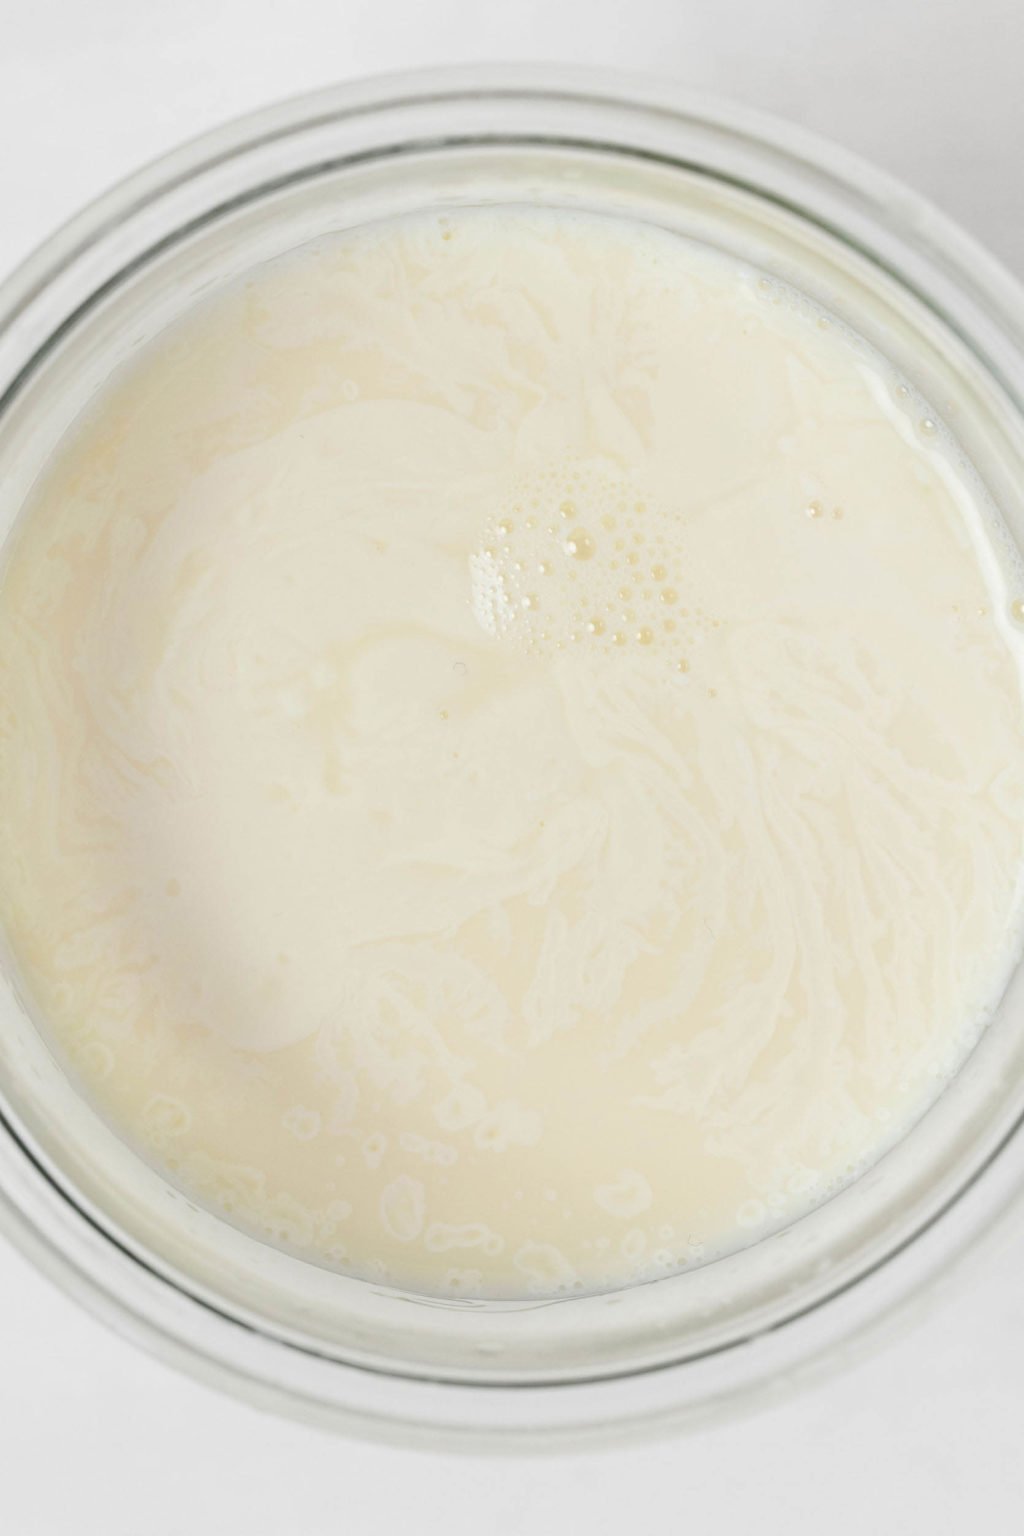 Una imagen de arriba de la leche en un recipiente de vidrio.